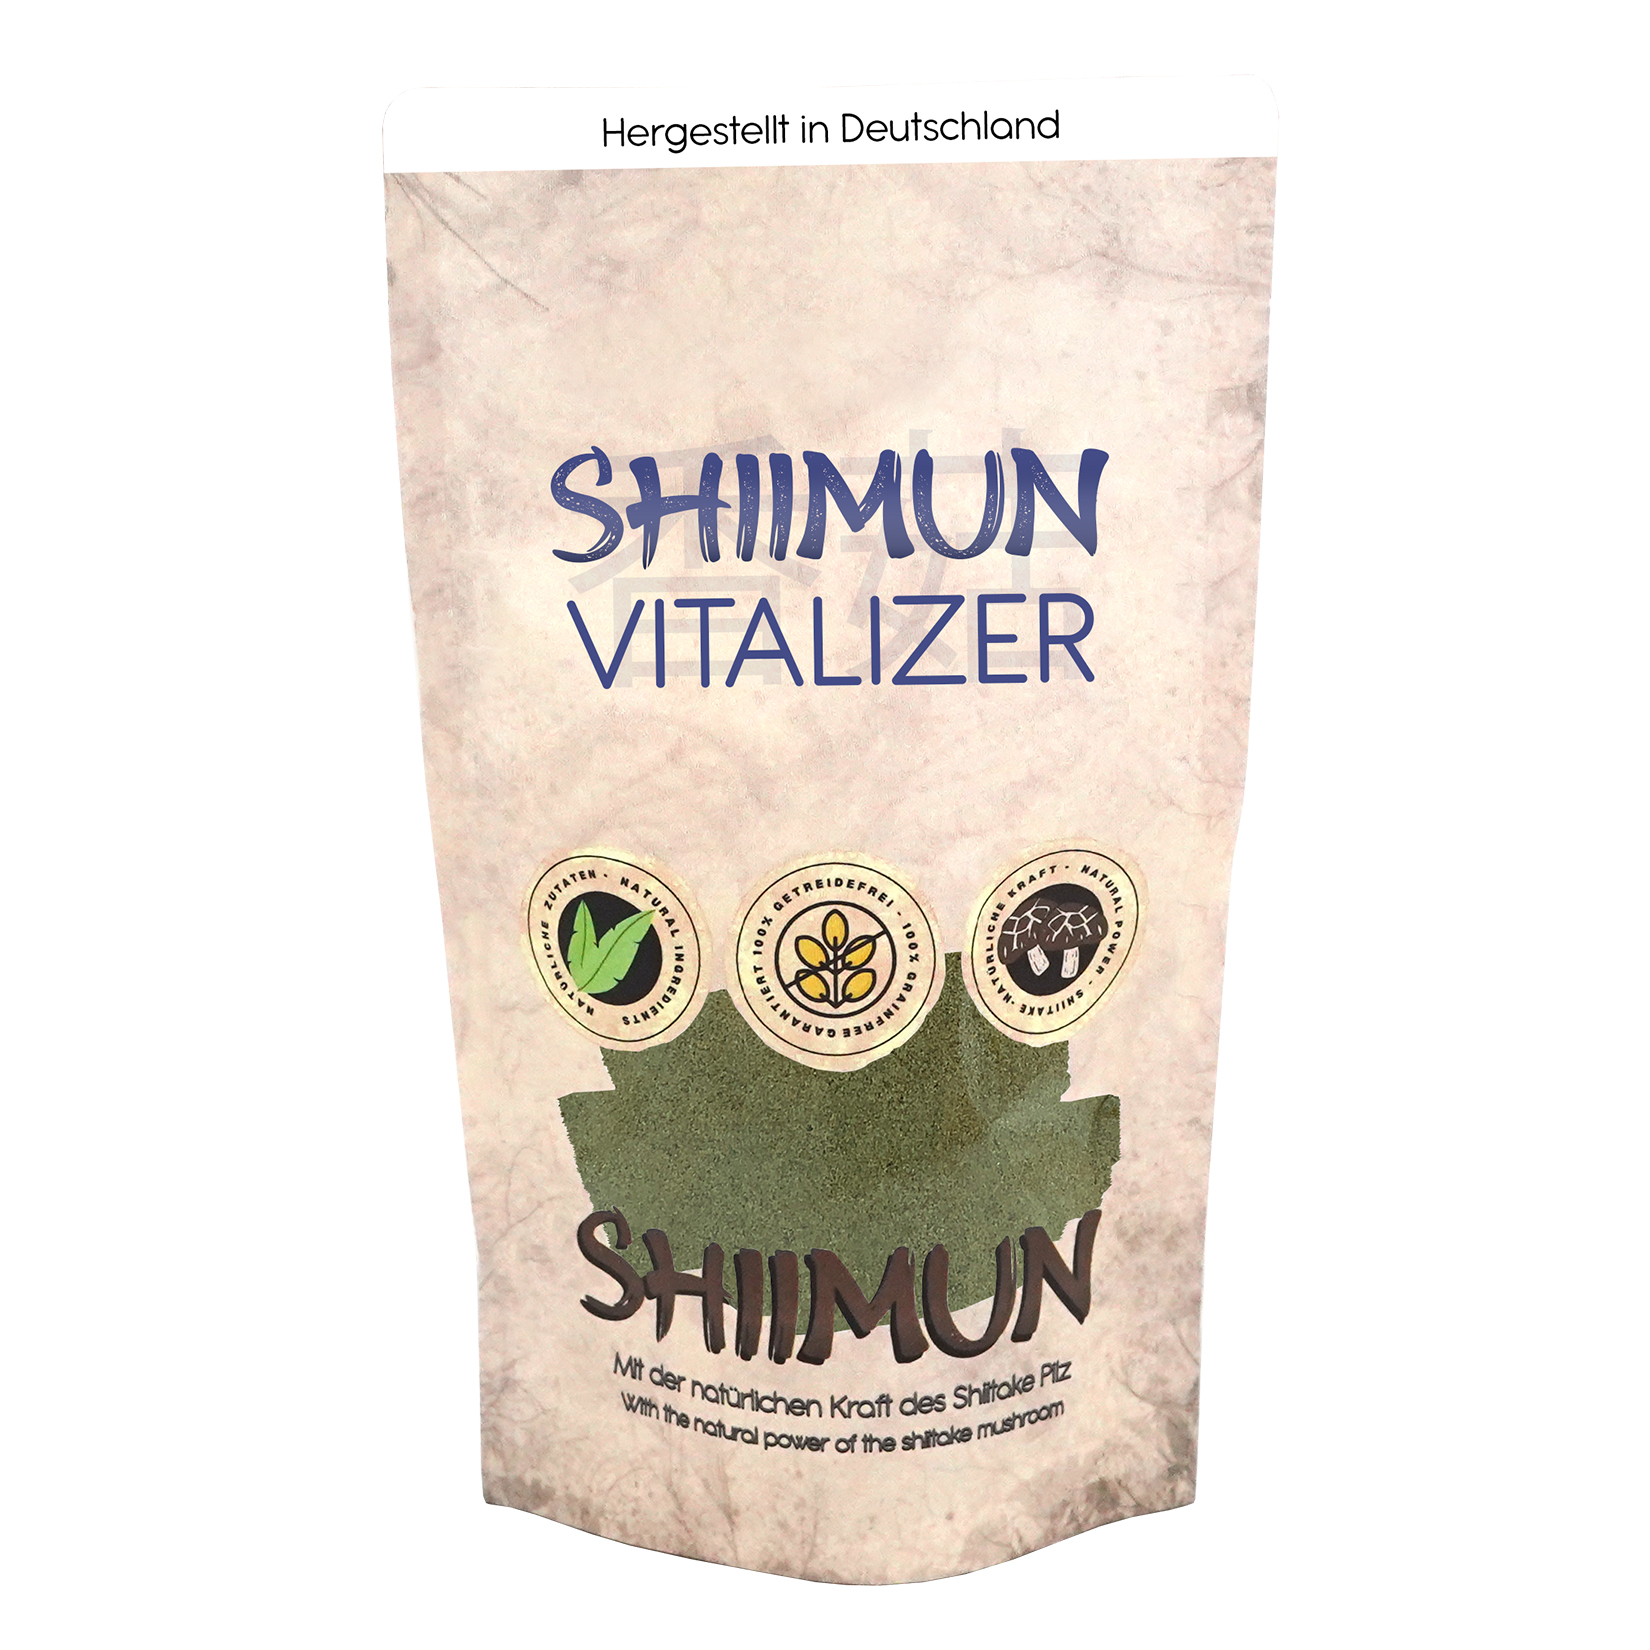 Shiimun vitalizer poudre - shiimun vitalizer pulver - 120g